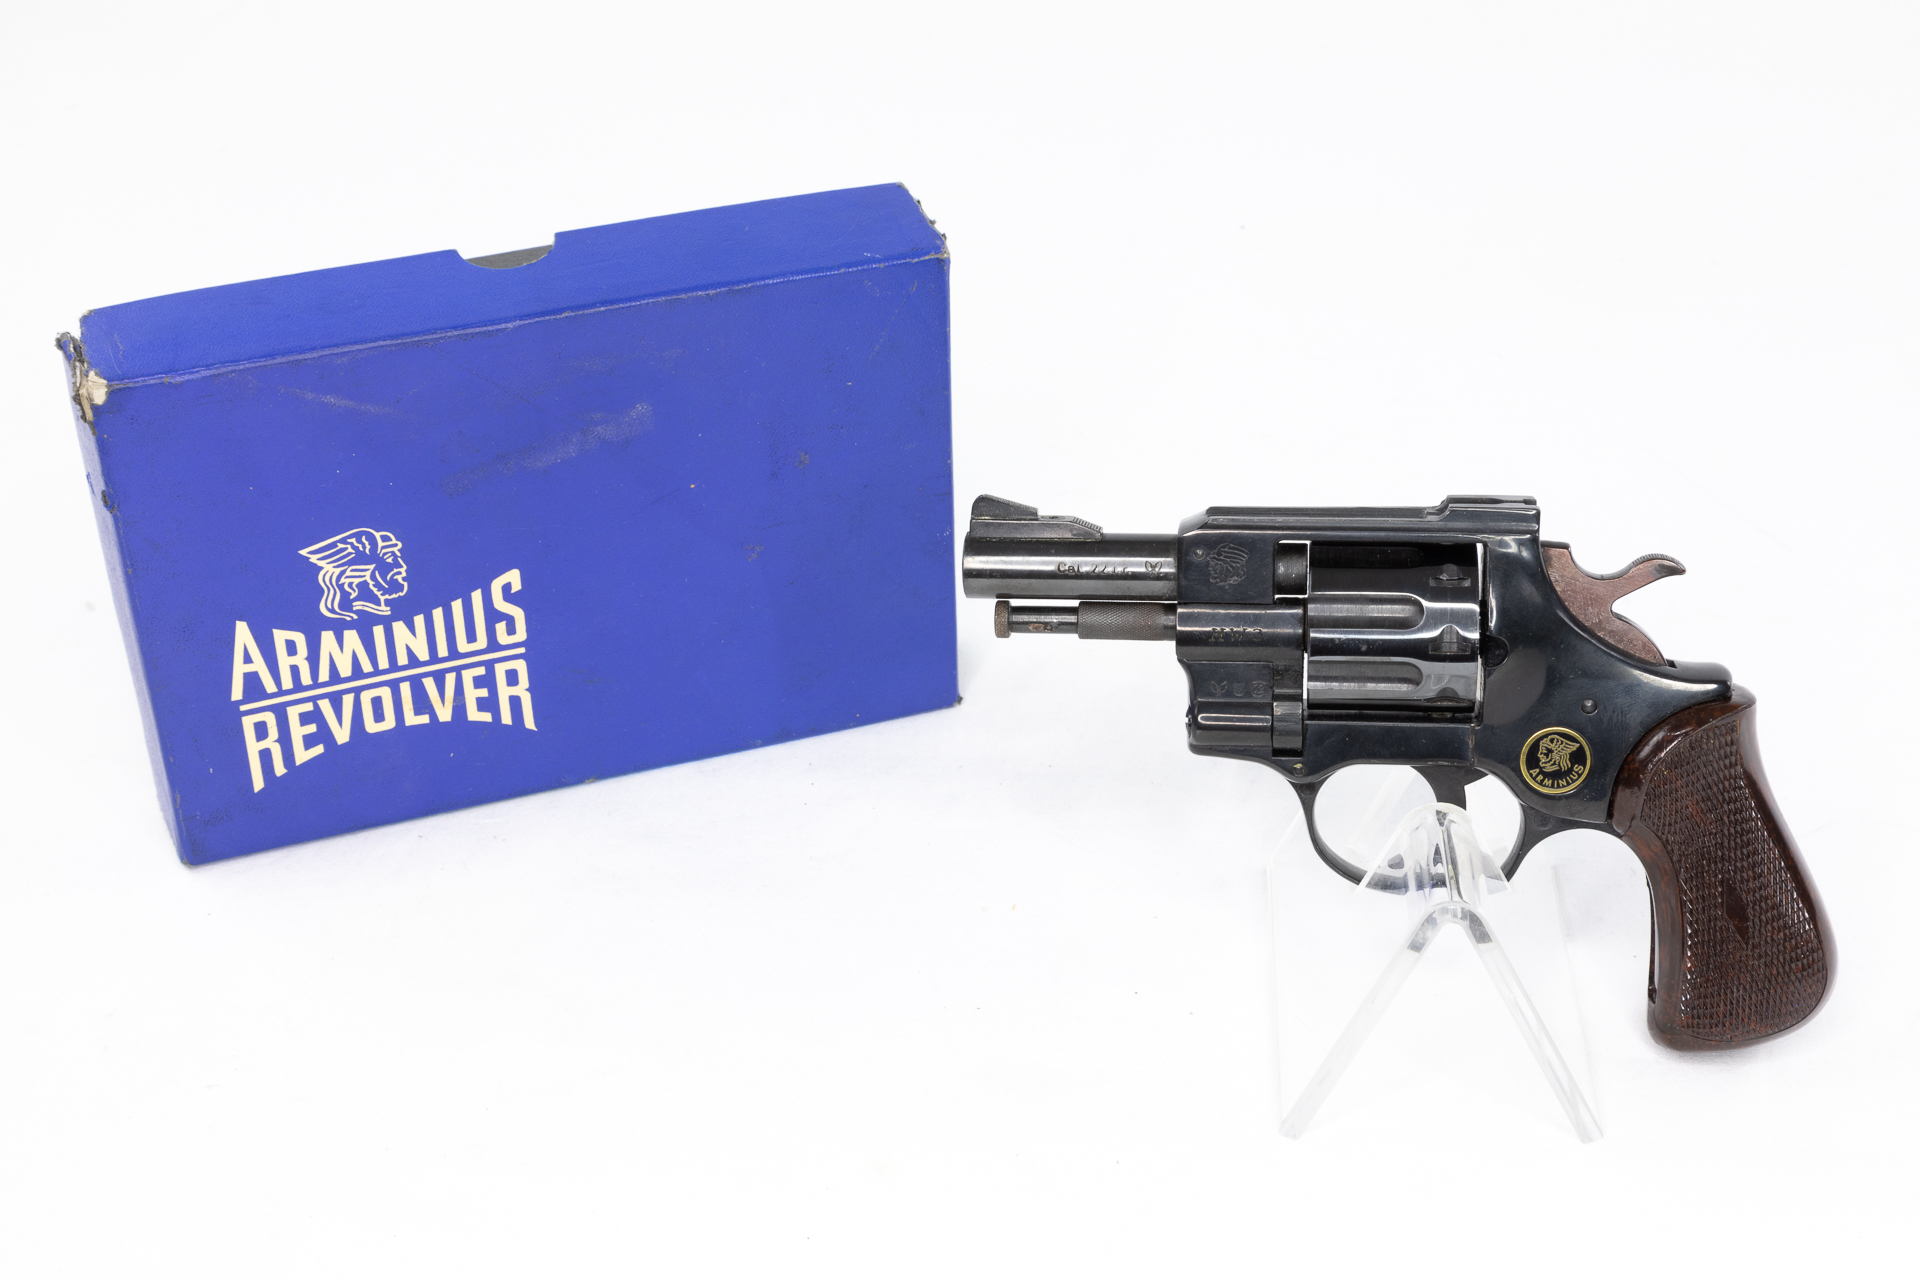 gebr. WEIHRAUCH Revolver Mod. HW3 2" Lauf, im Original Karton